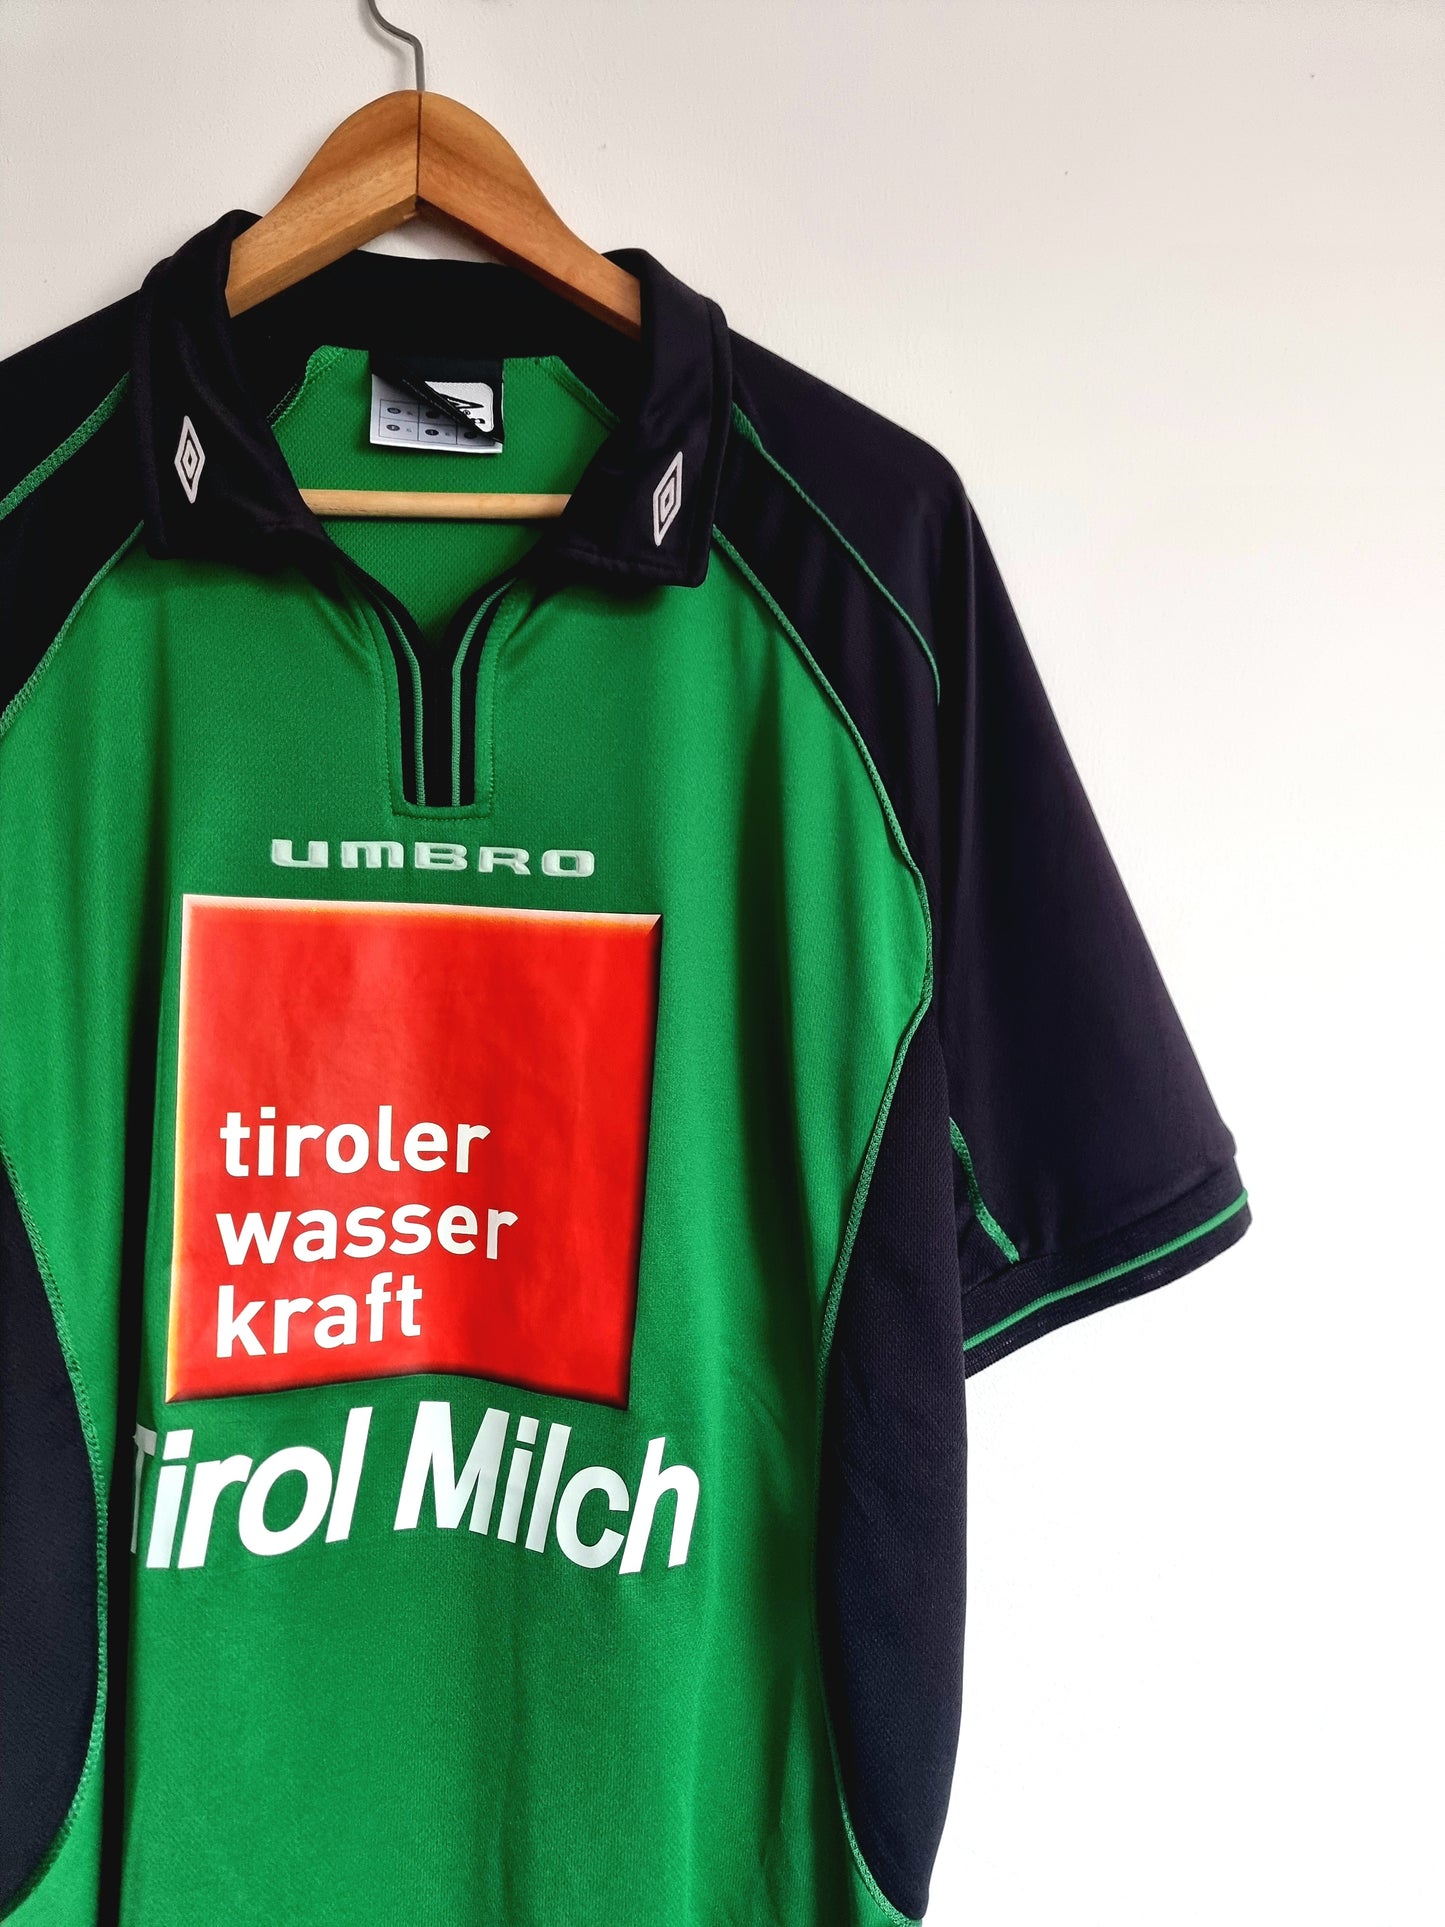 Umbro Tirol Innsbruck 03/04 Home Shirt XL